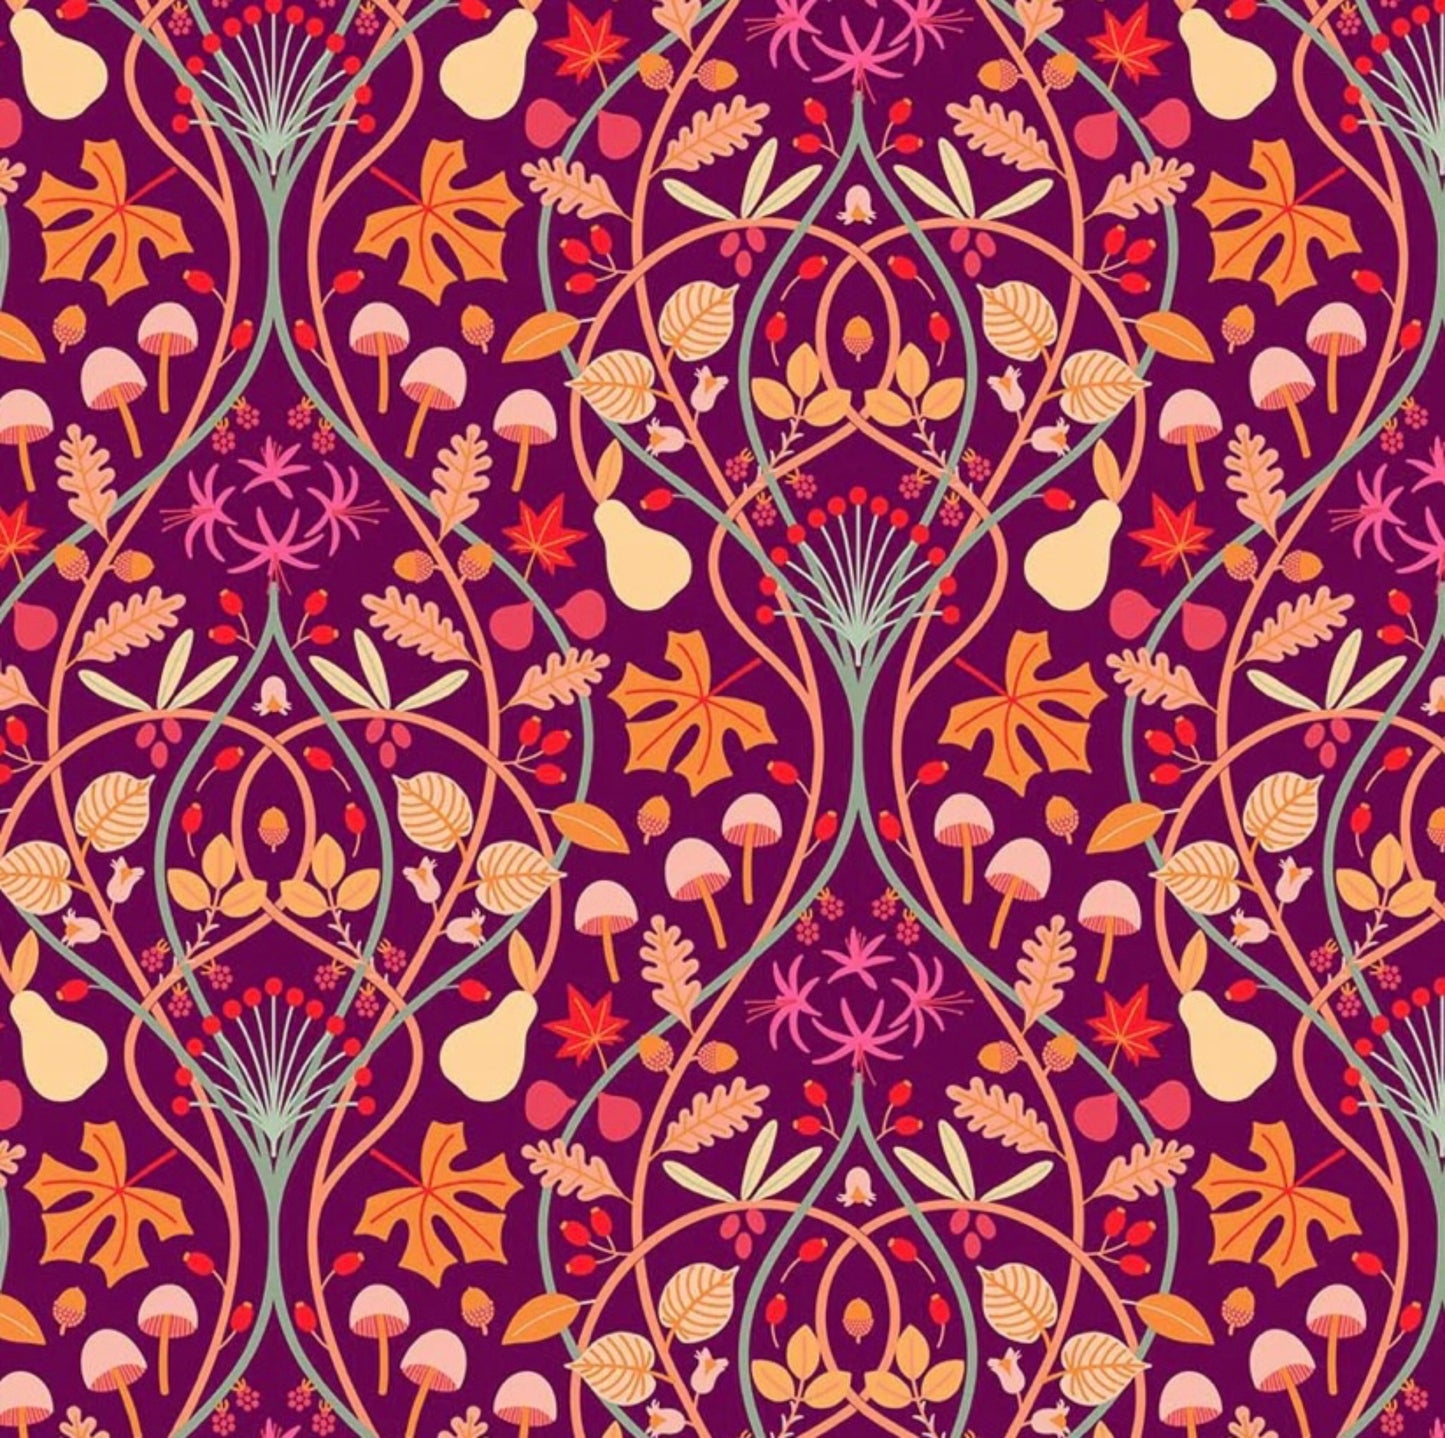 Fall Botanica fabric by Pippa Shaw for For Figo Fabrics